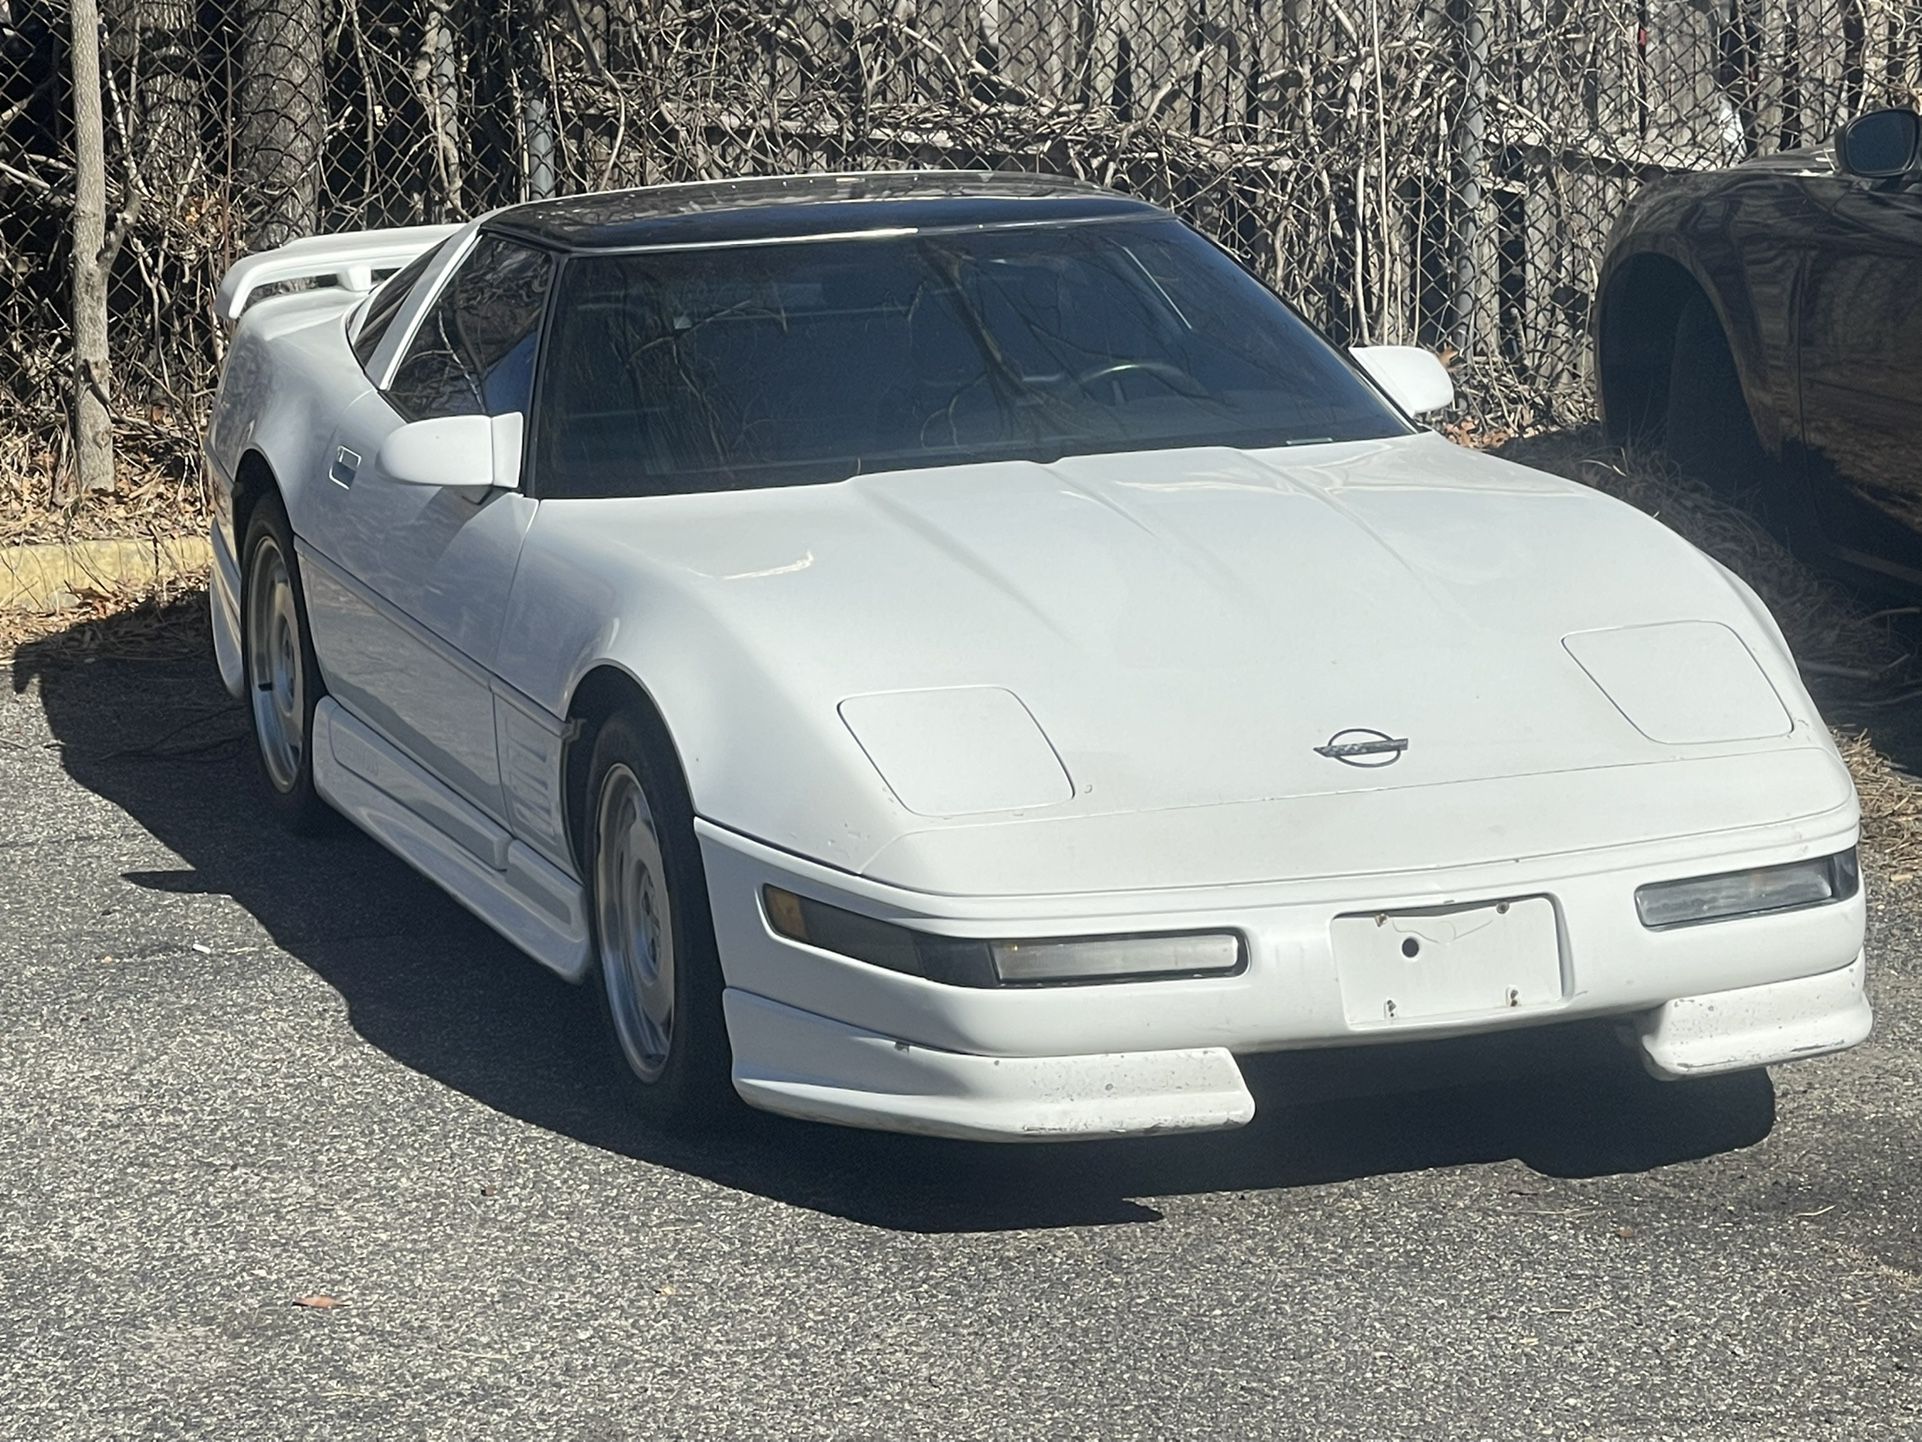 1991 Chevrolet Corvette